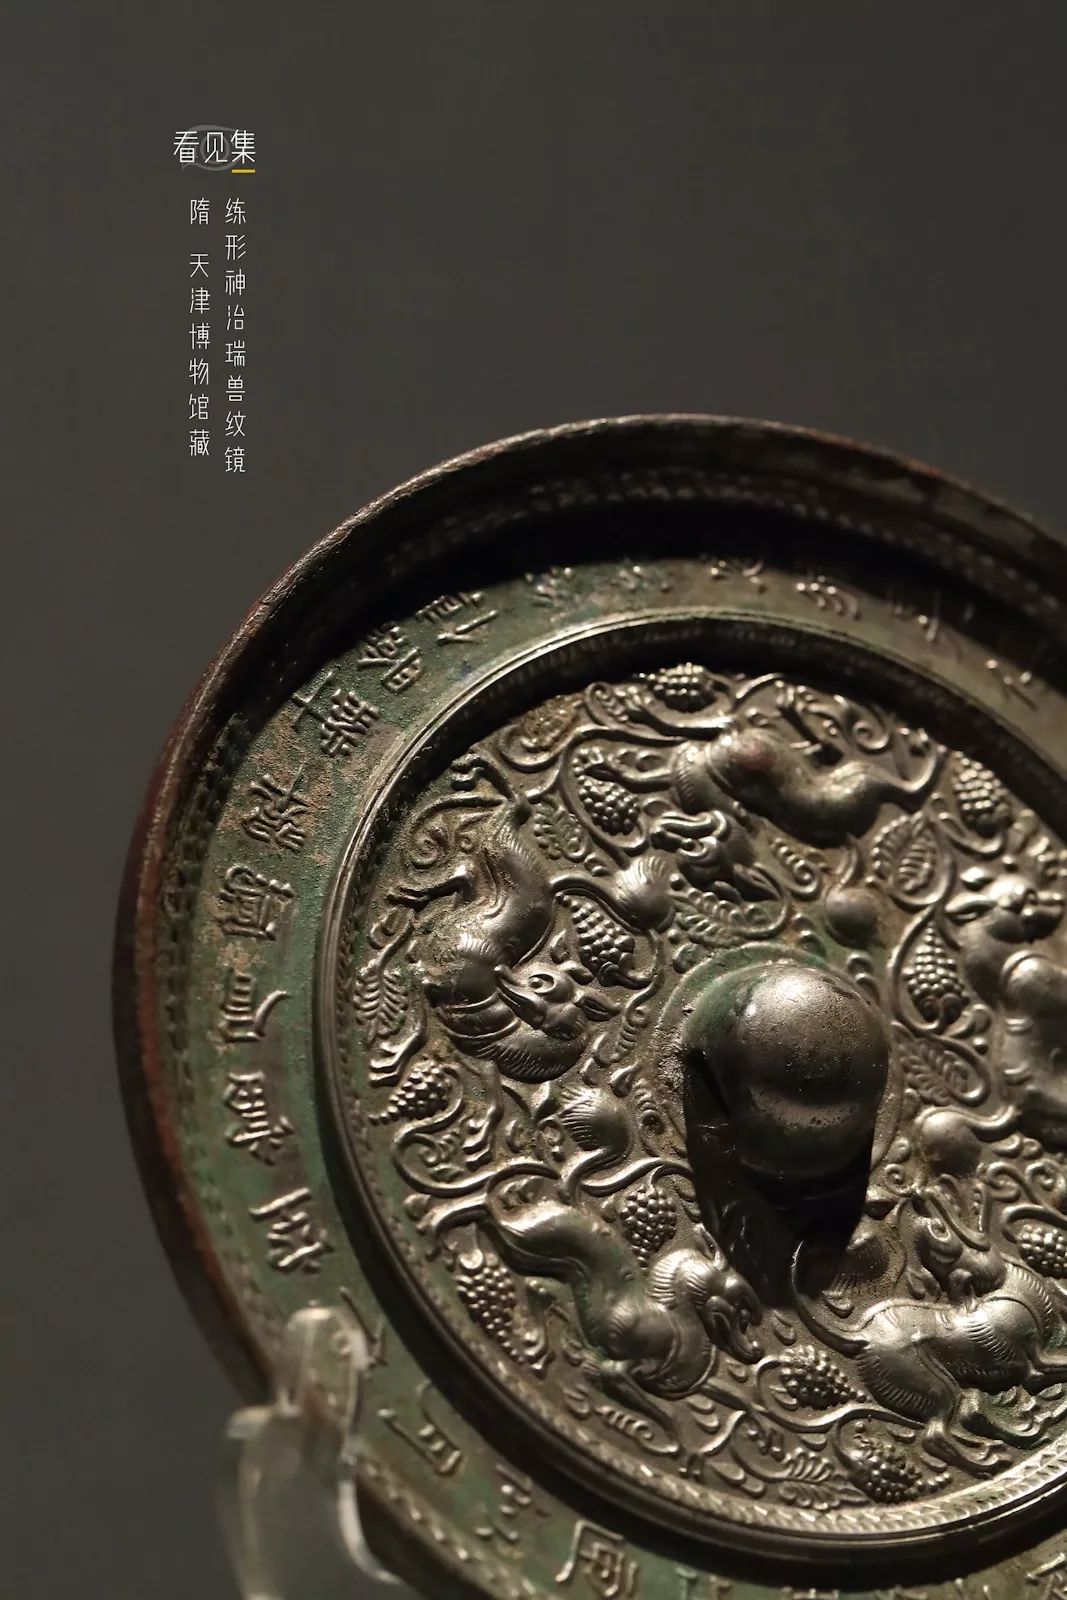 《古董局中局》里那面唐海兽葡萄纹铜镜找到了